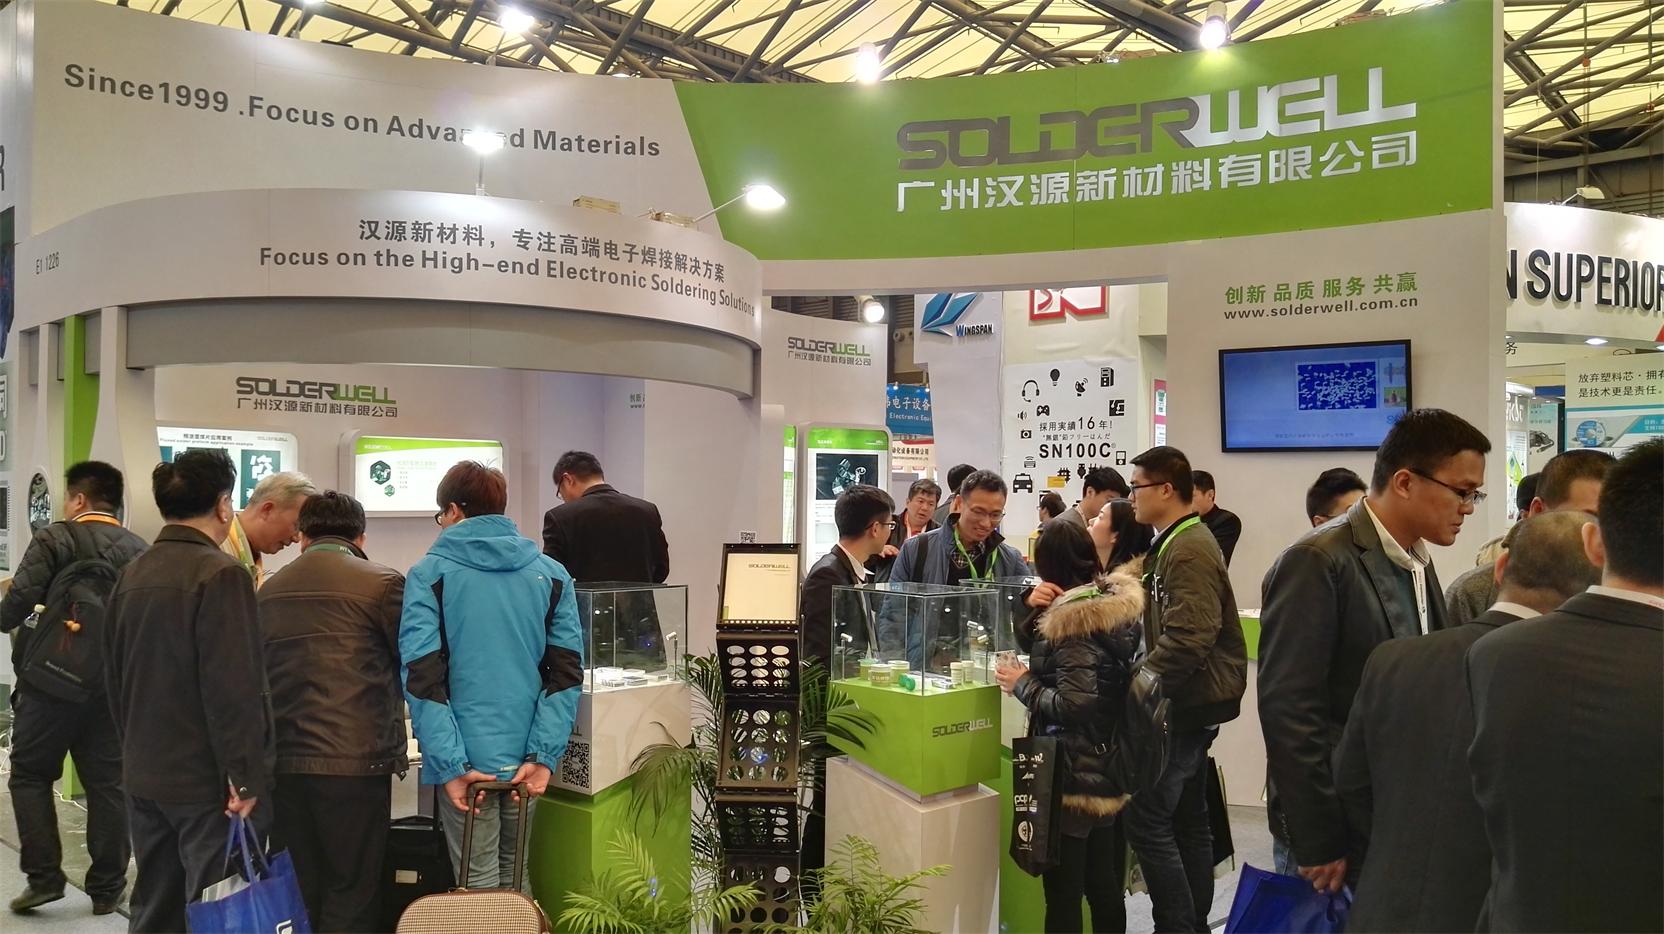 汉源携精密预成型焊料产品再度亮相2016慕尼黑上海展